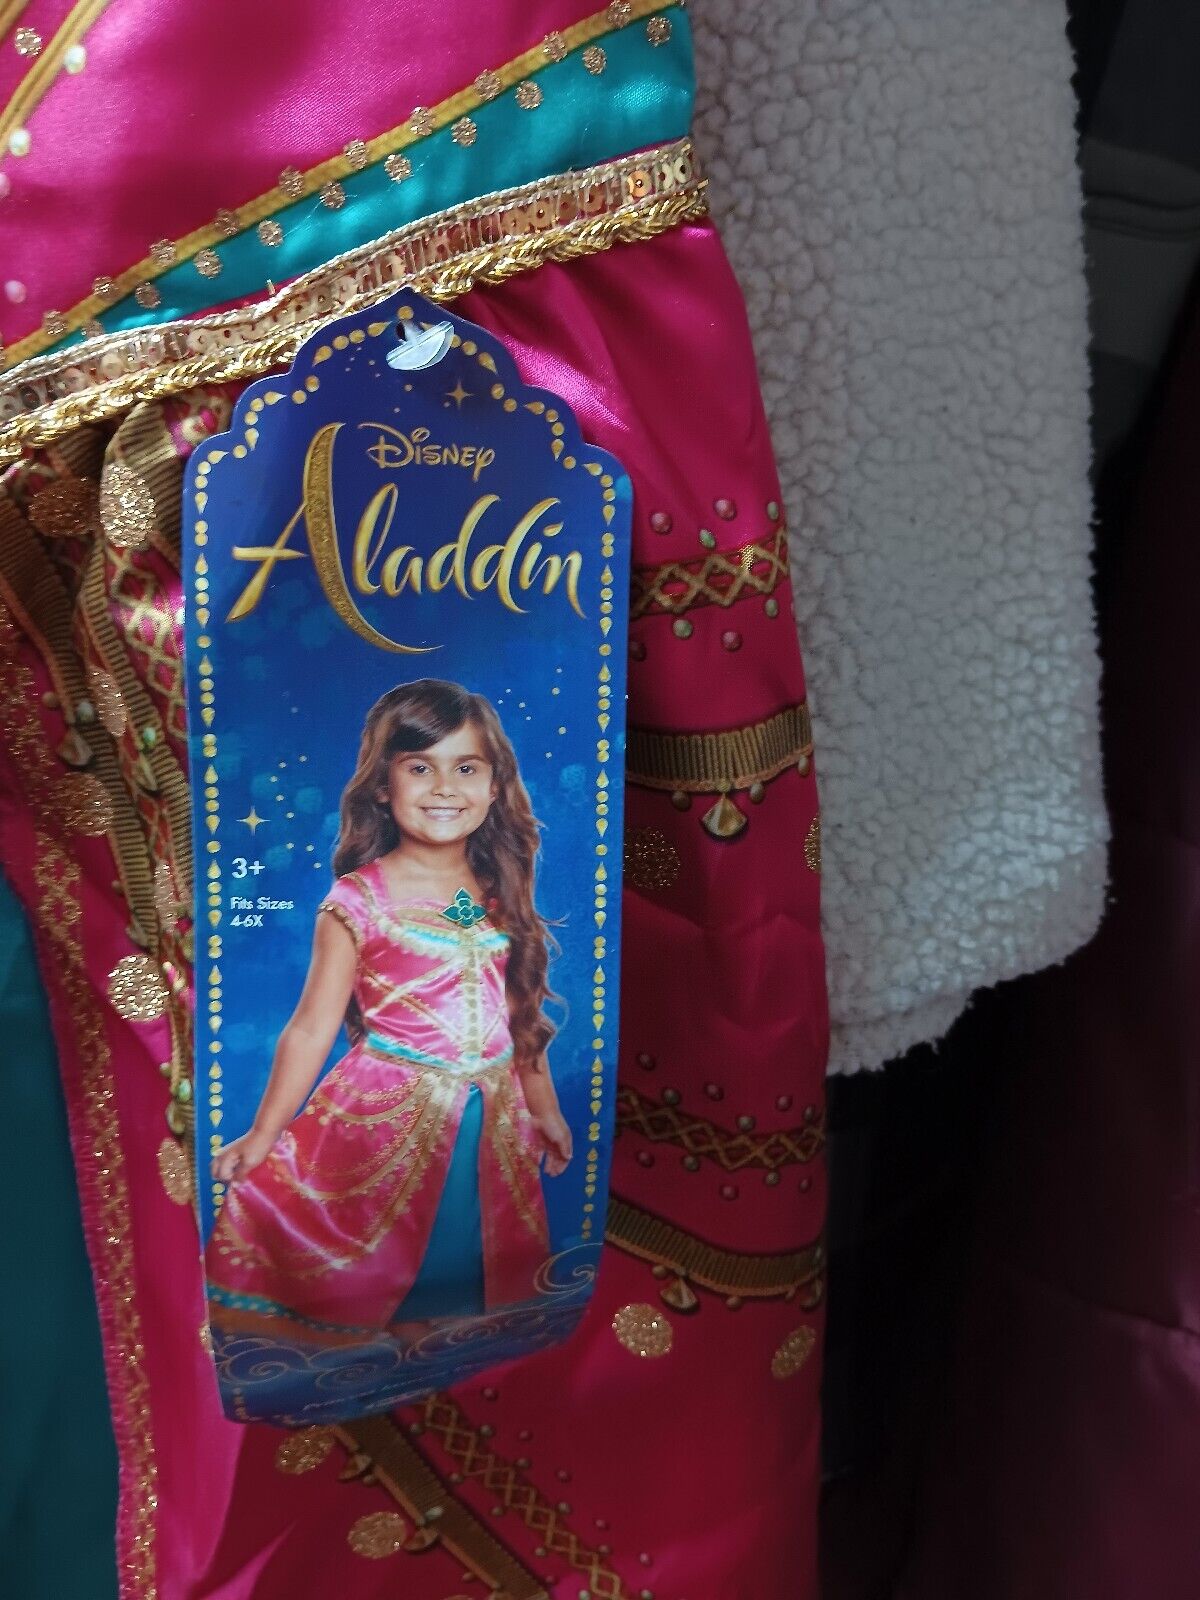 Fancyset Costume de princesse Jasmine pour filles – Costume de prin